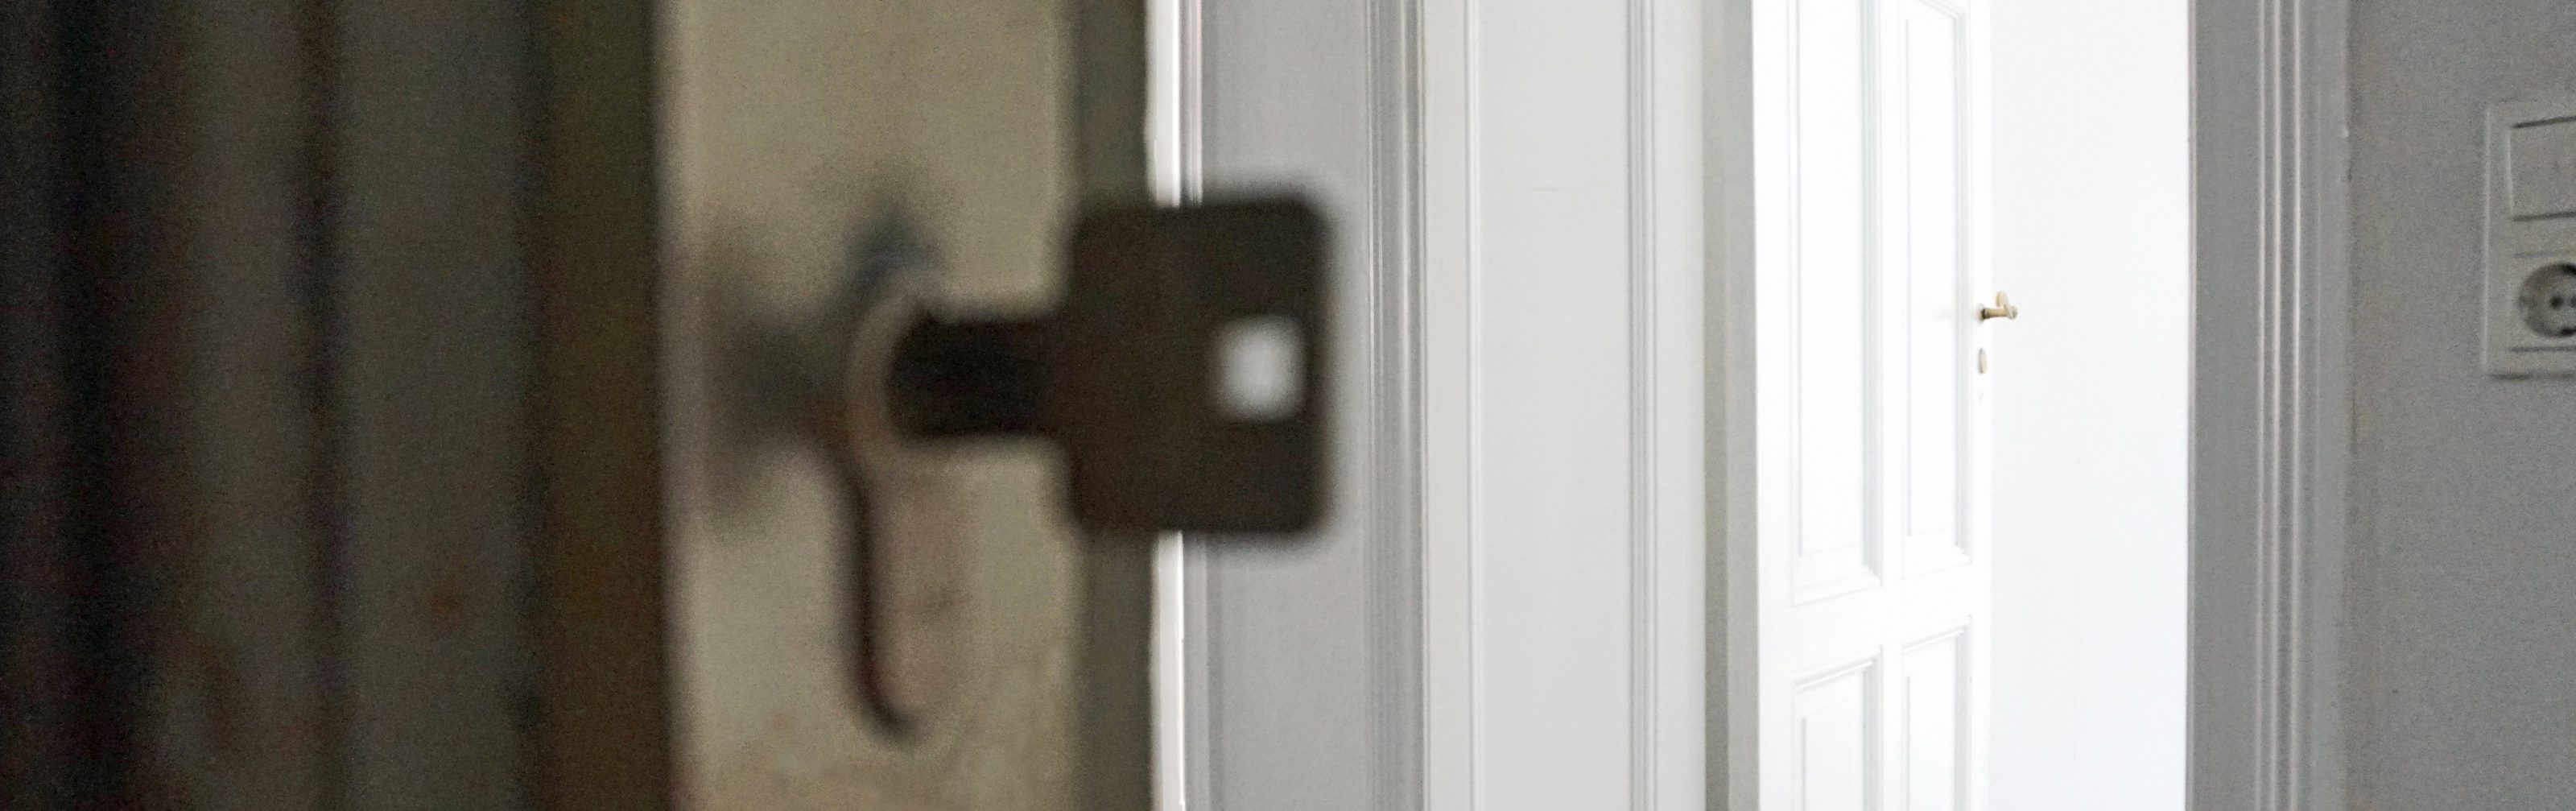 Durch eine offene Tür blickt man in eine leere Wohnung. Der Schlüssel zur Tür steckt im Schloss.